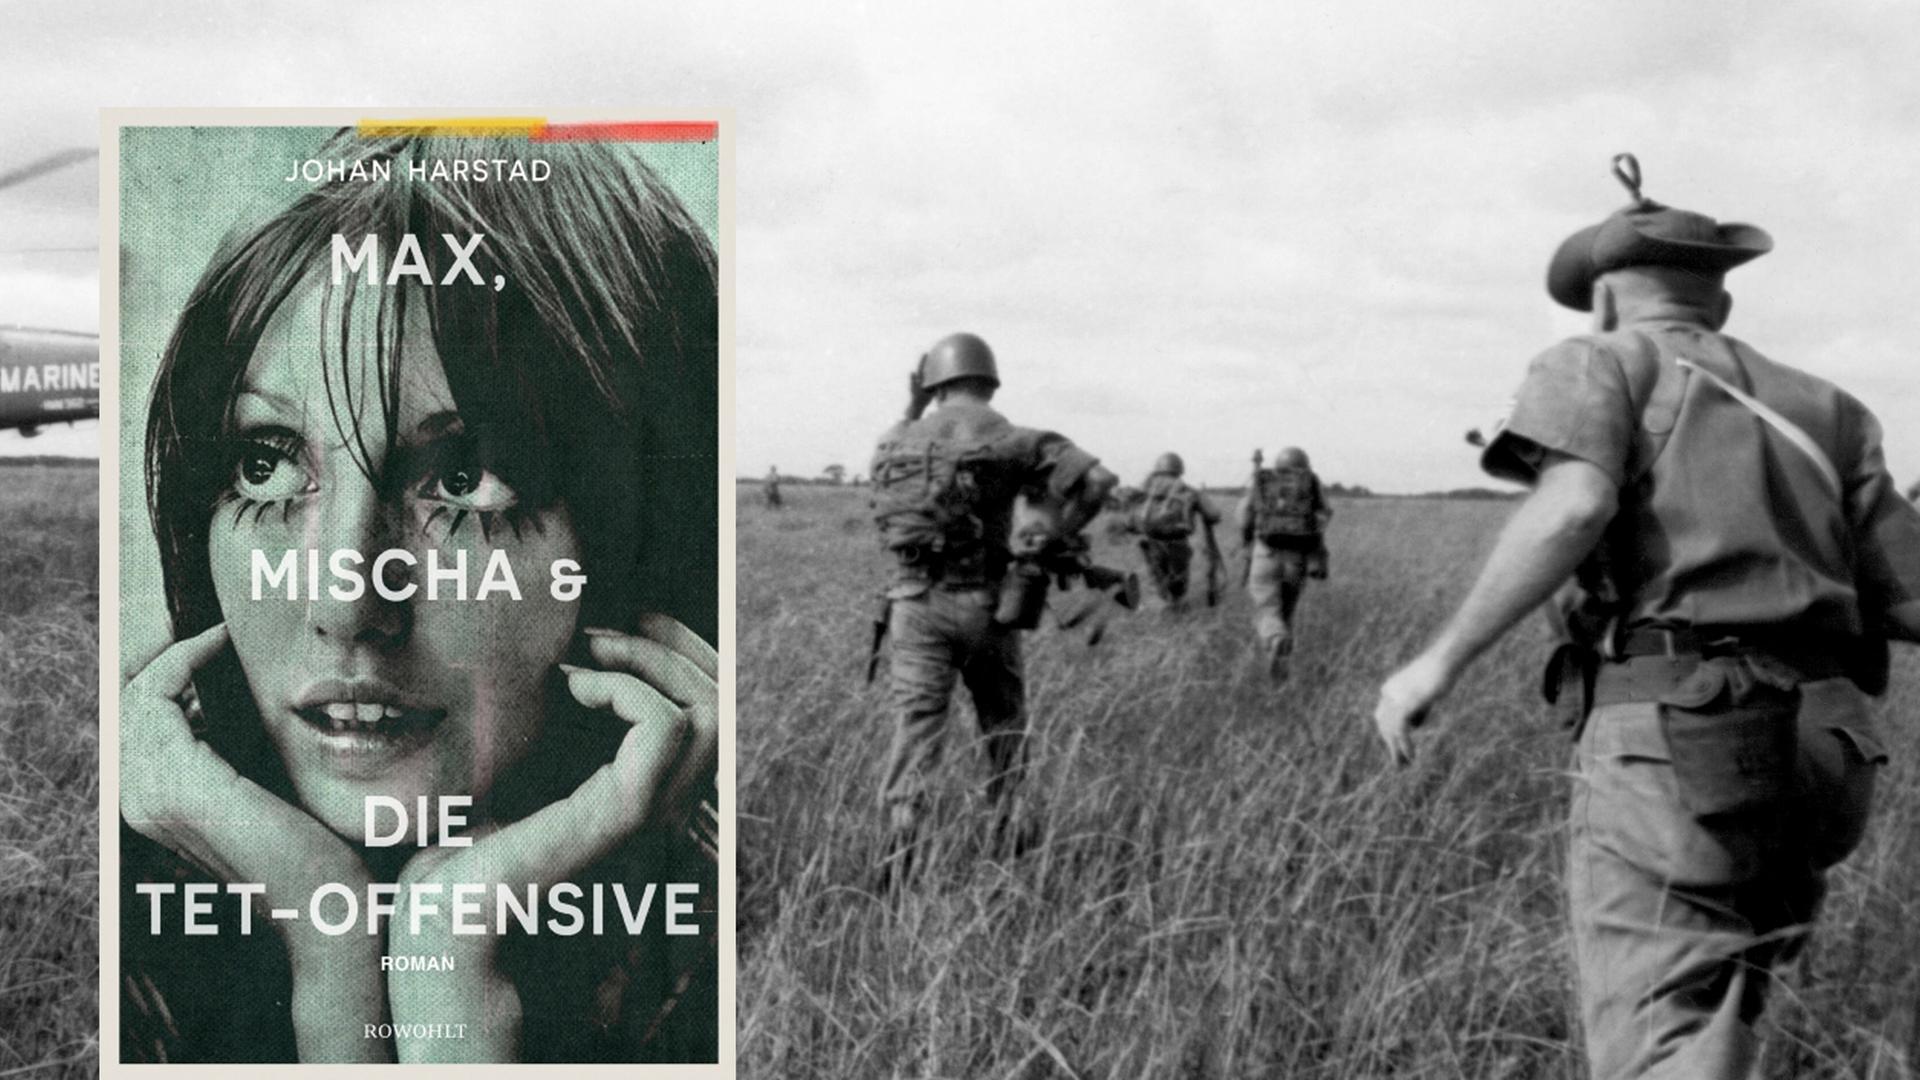 Amerikanische Marines bei einem Einsatz im Vietnamkrieg im Hintergrund, im Vordergrund: Buchcover "Max und Mischa und die Tet-Offensive"